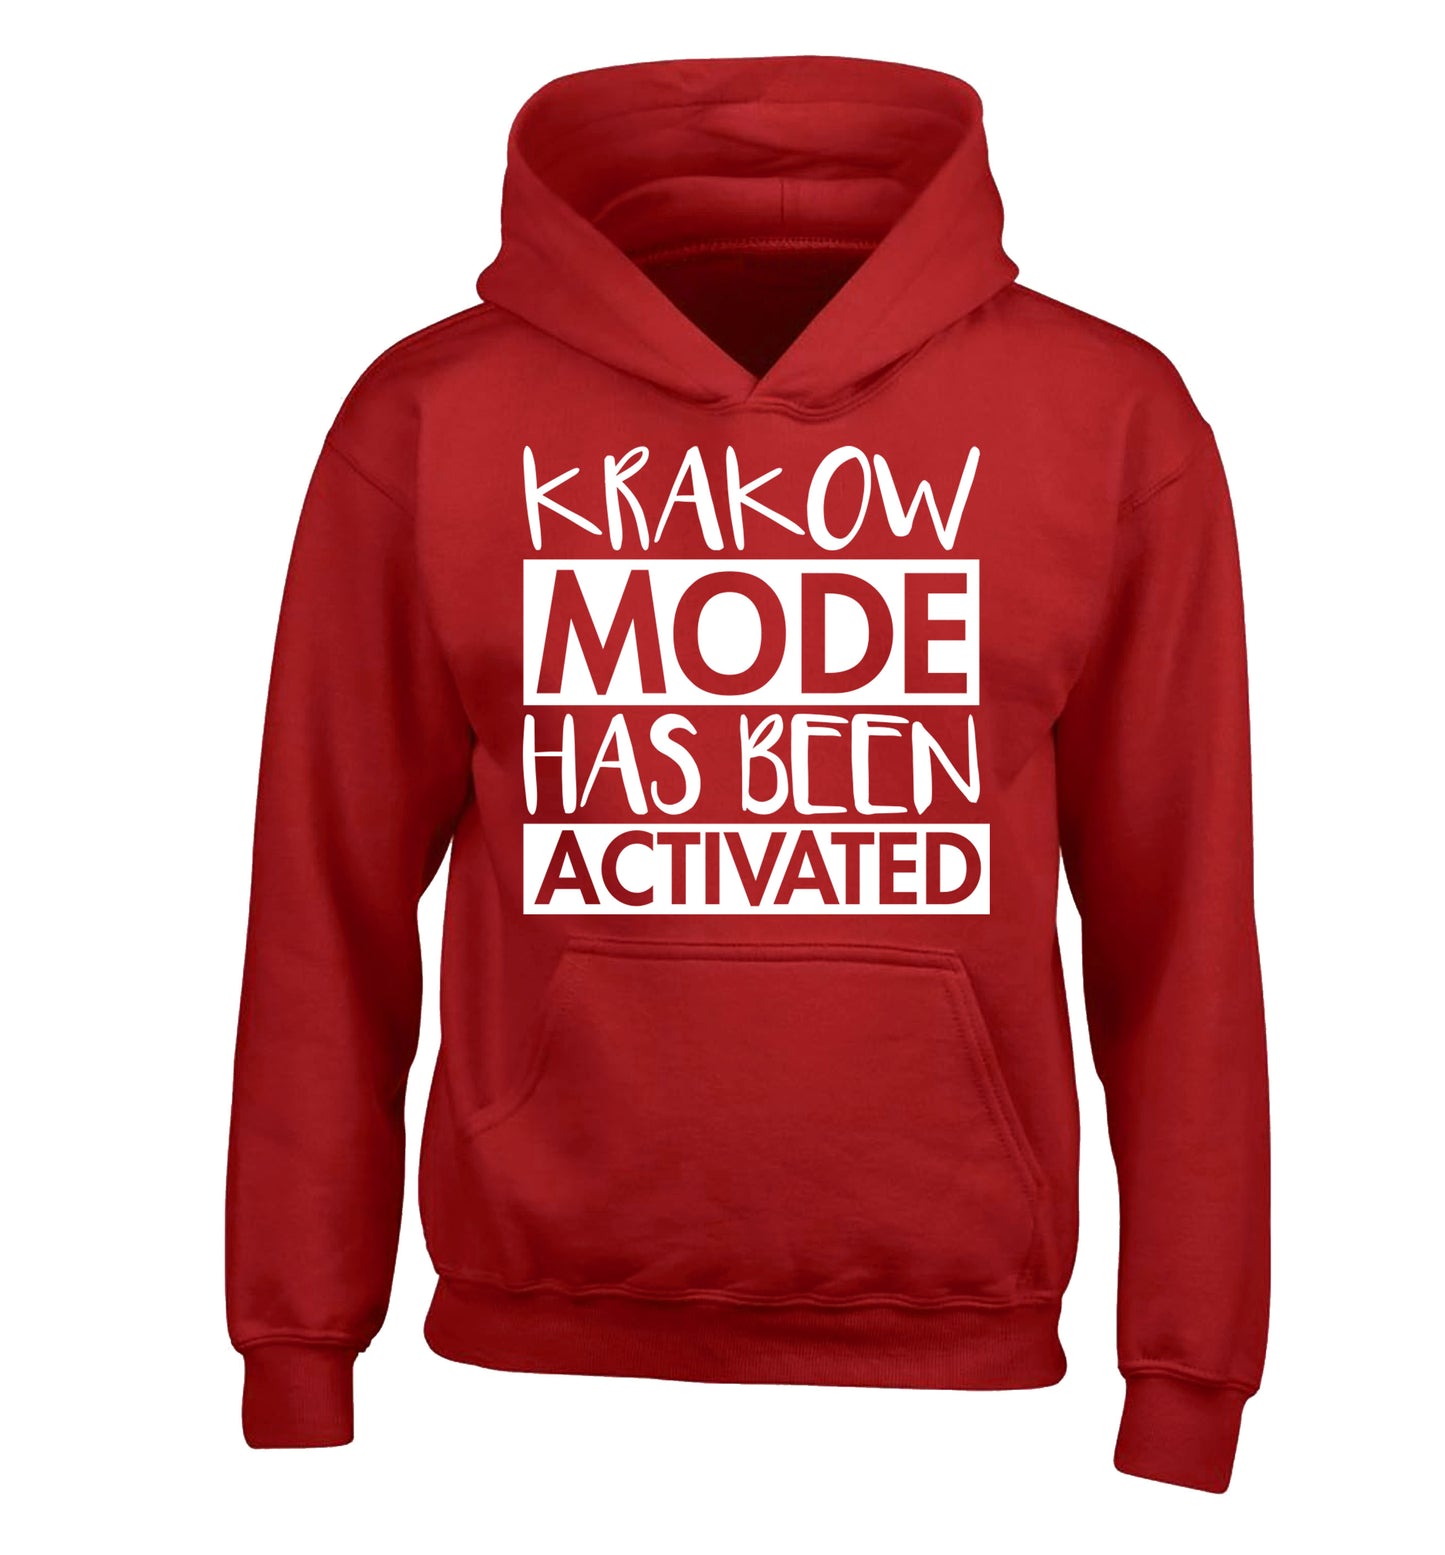 Krakow mode has been activated children's red hoodie 12-13 Years